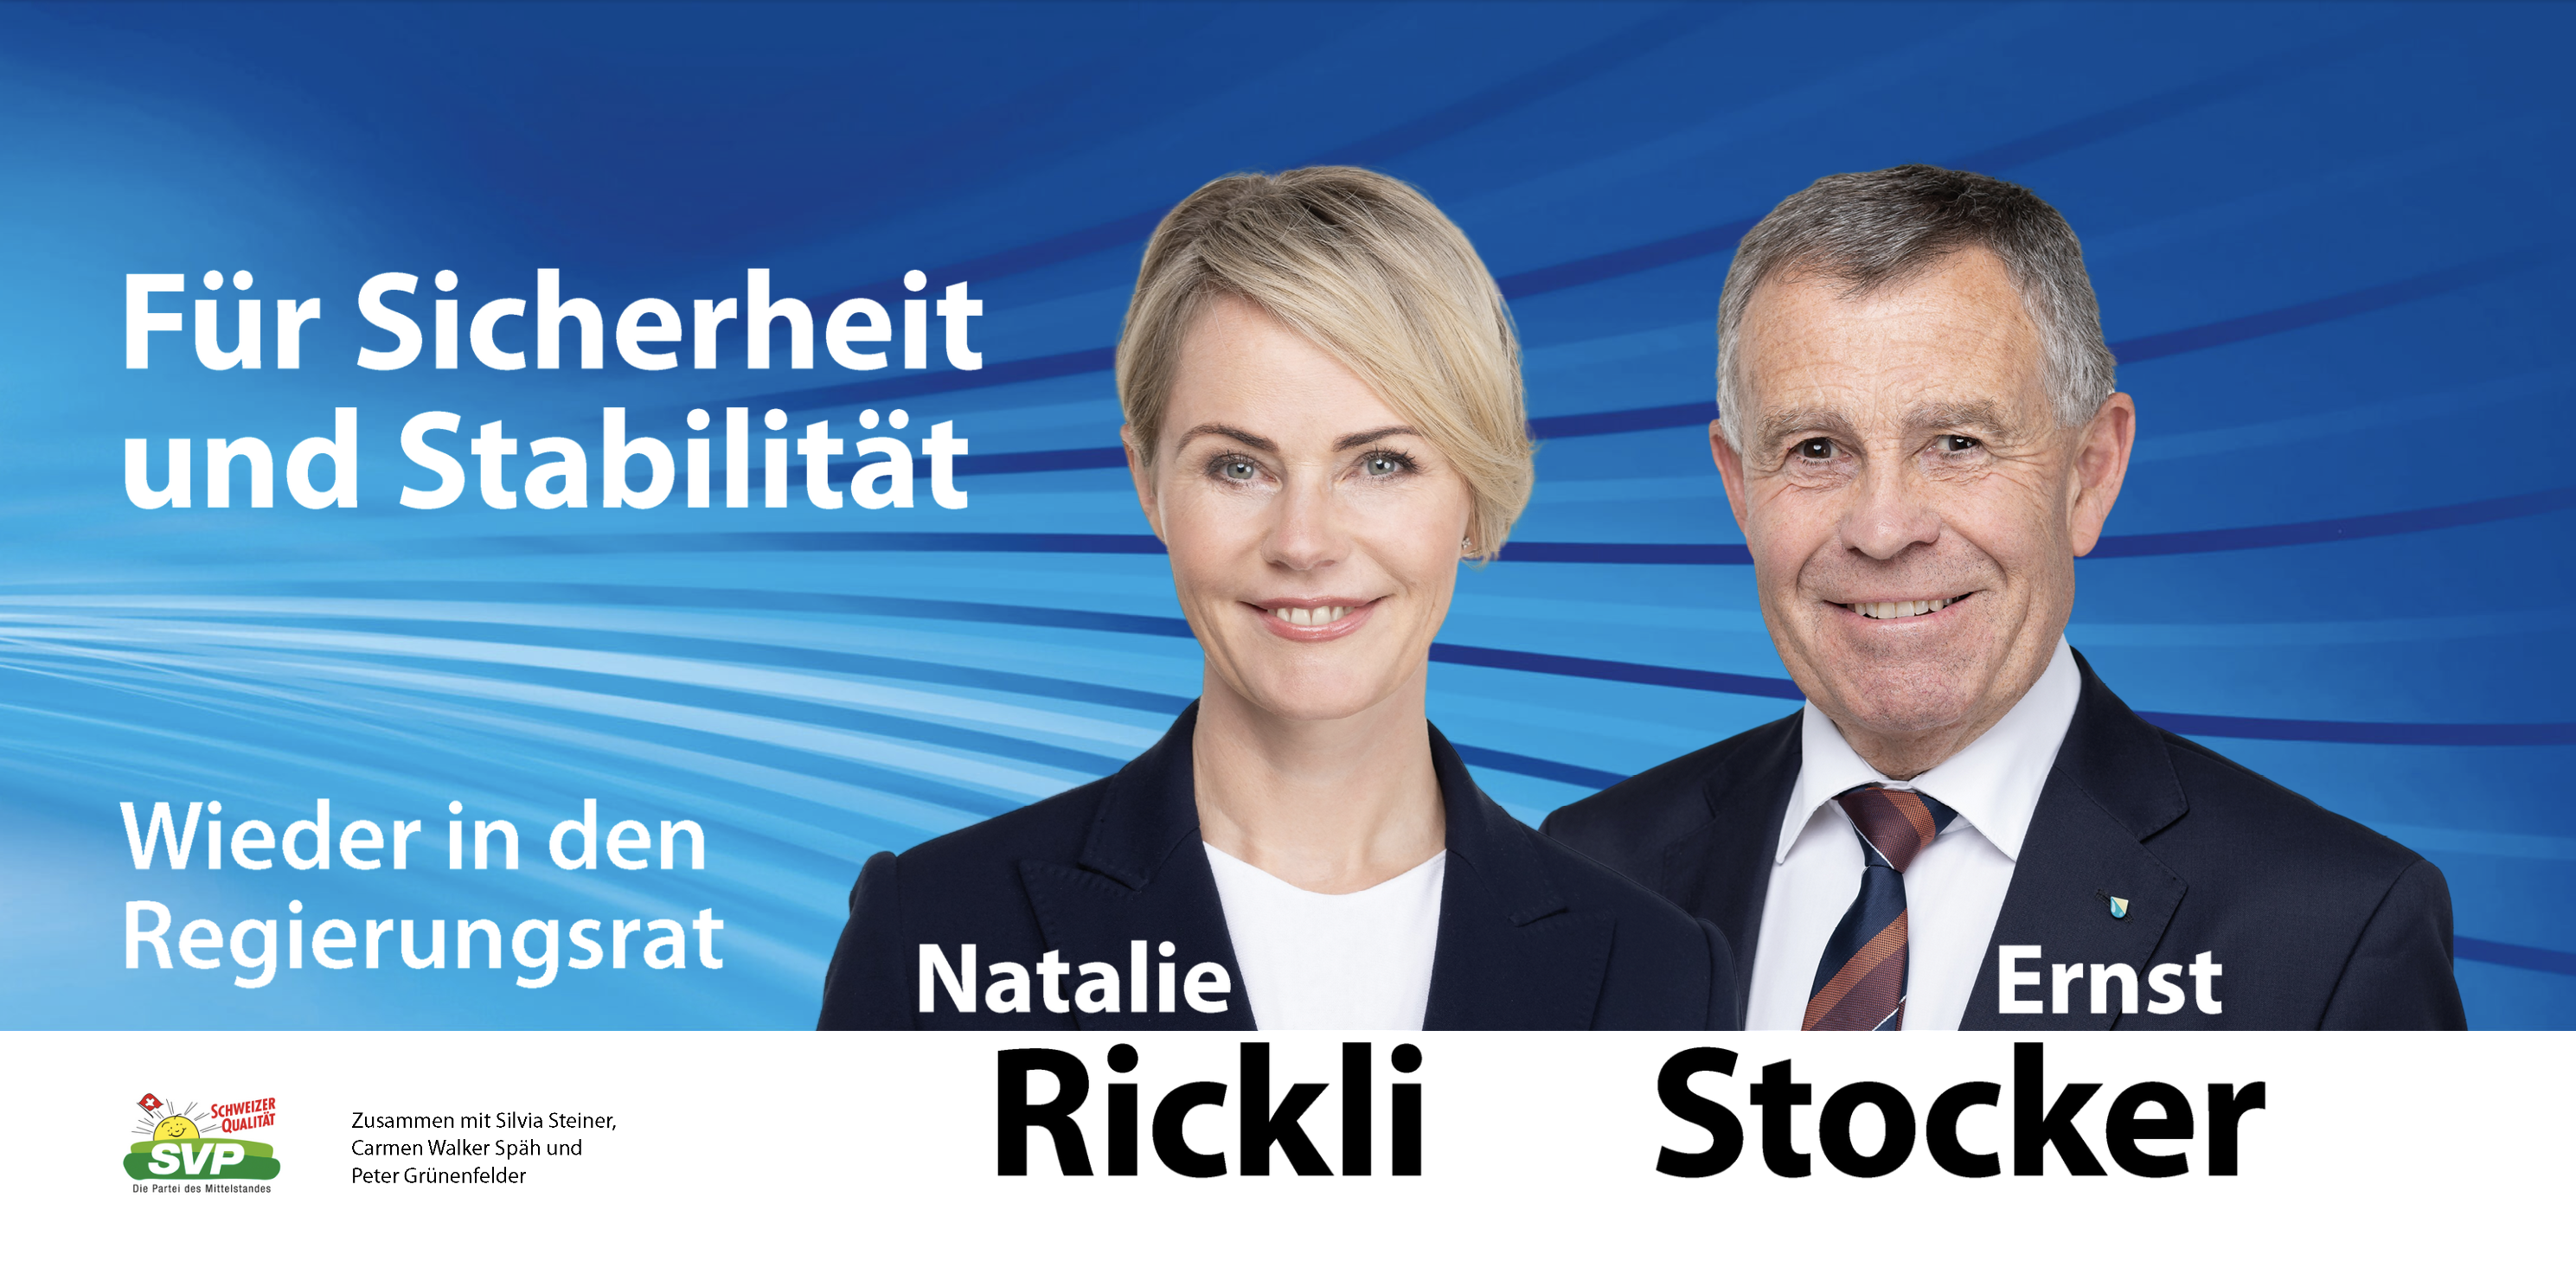 Nathalie Rickly, Ernst Stocker - Wieder in den Regierungsrat